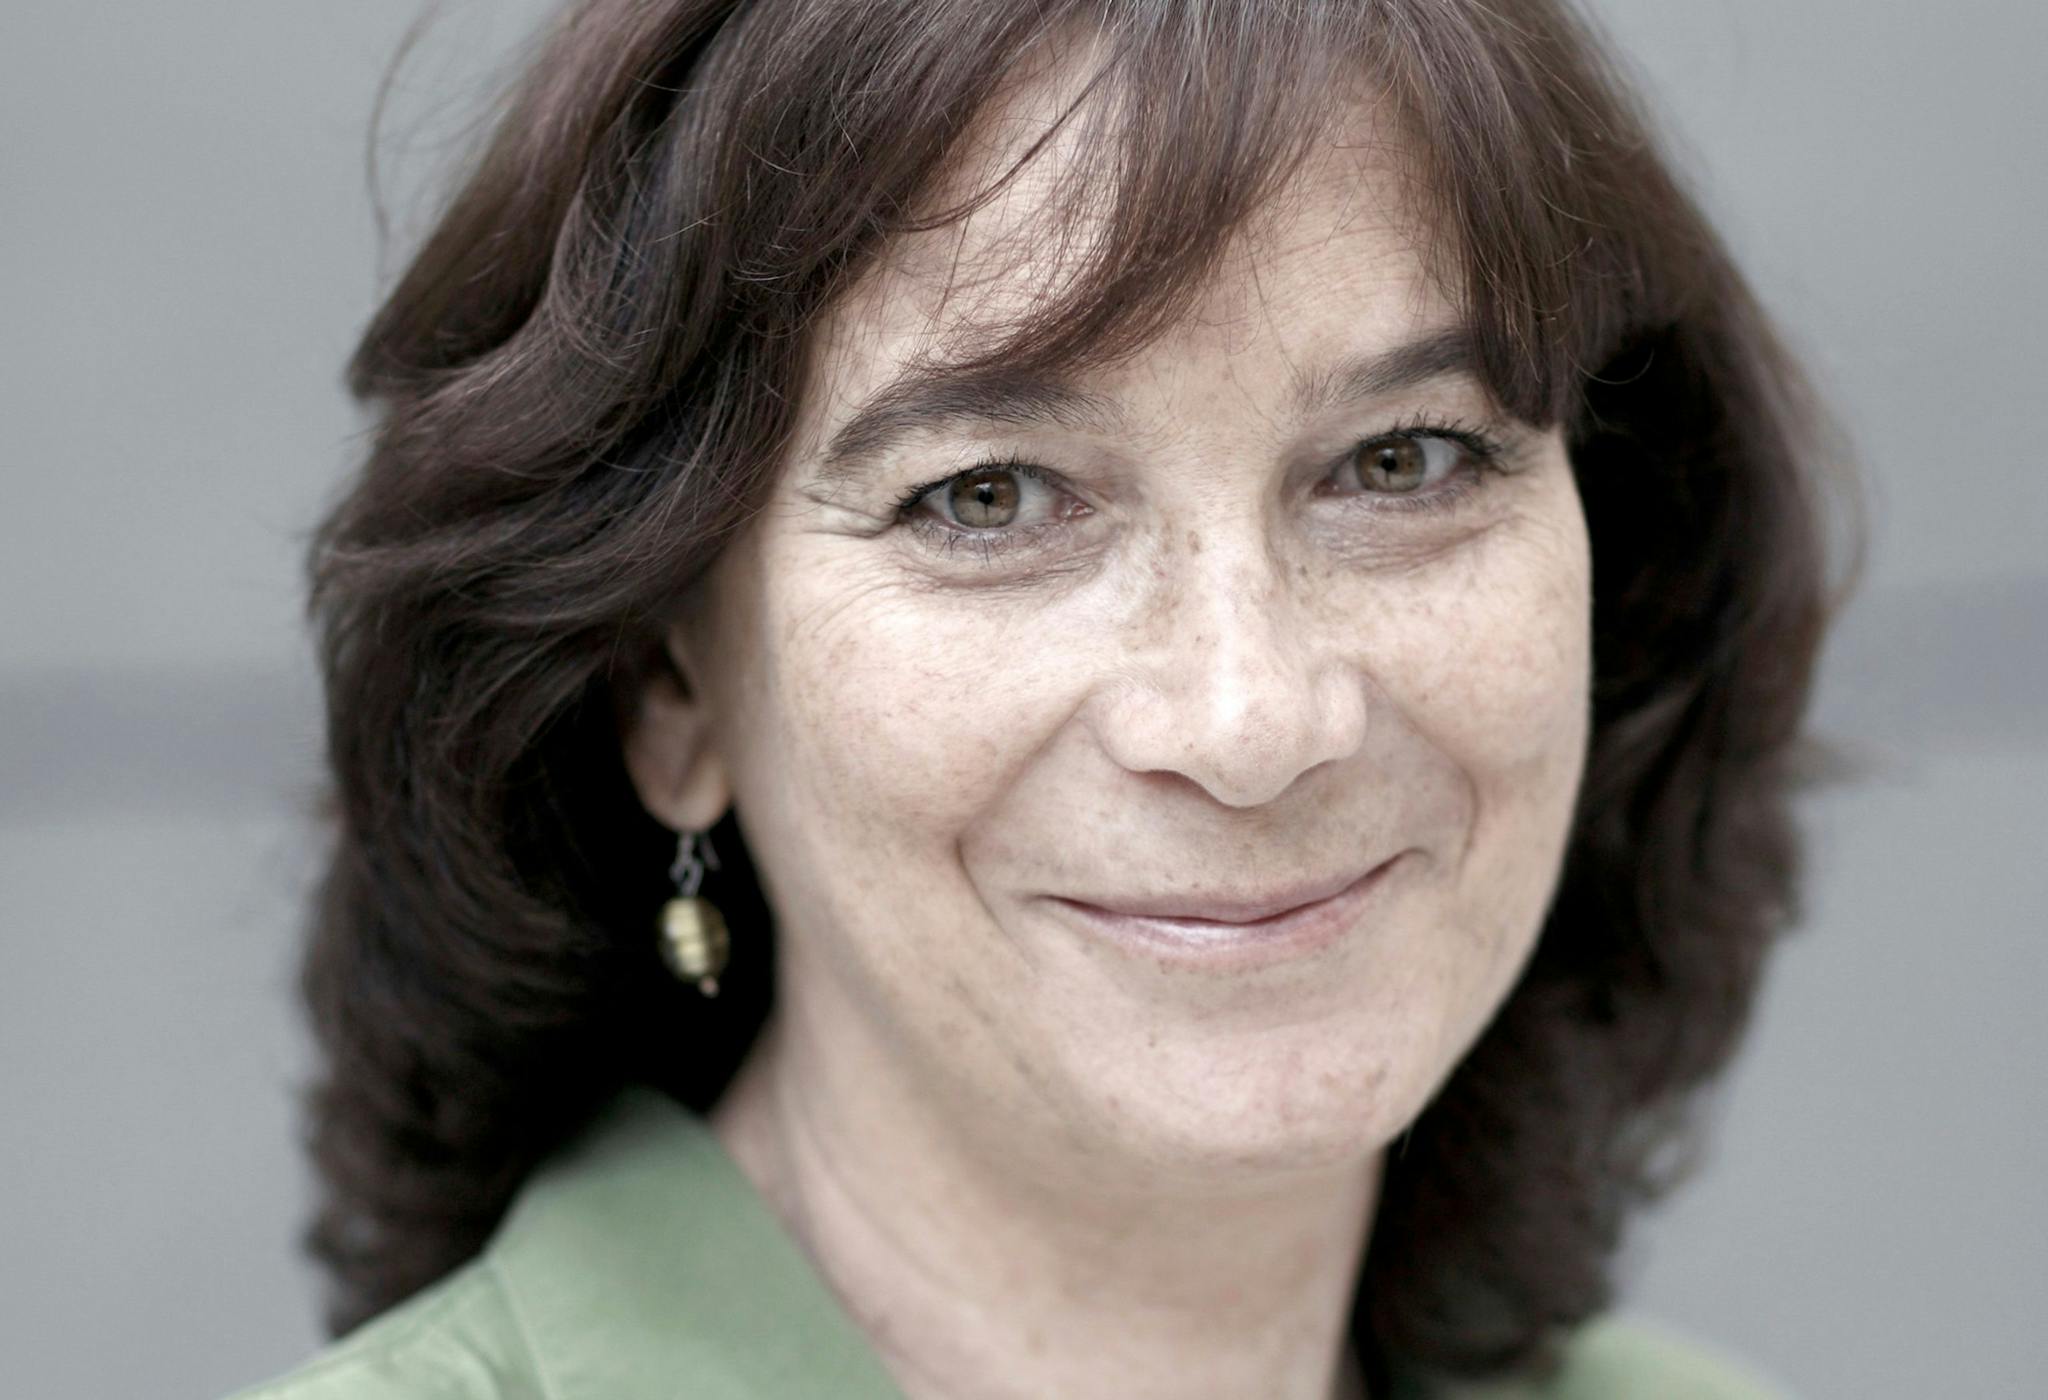 La directora y guionista Patricia Ferreira ha fallecido en Madrid, a los 65 años